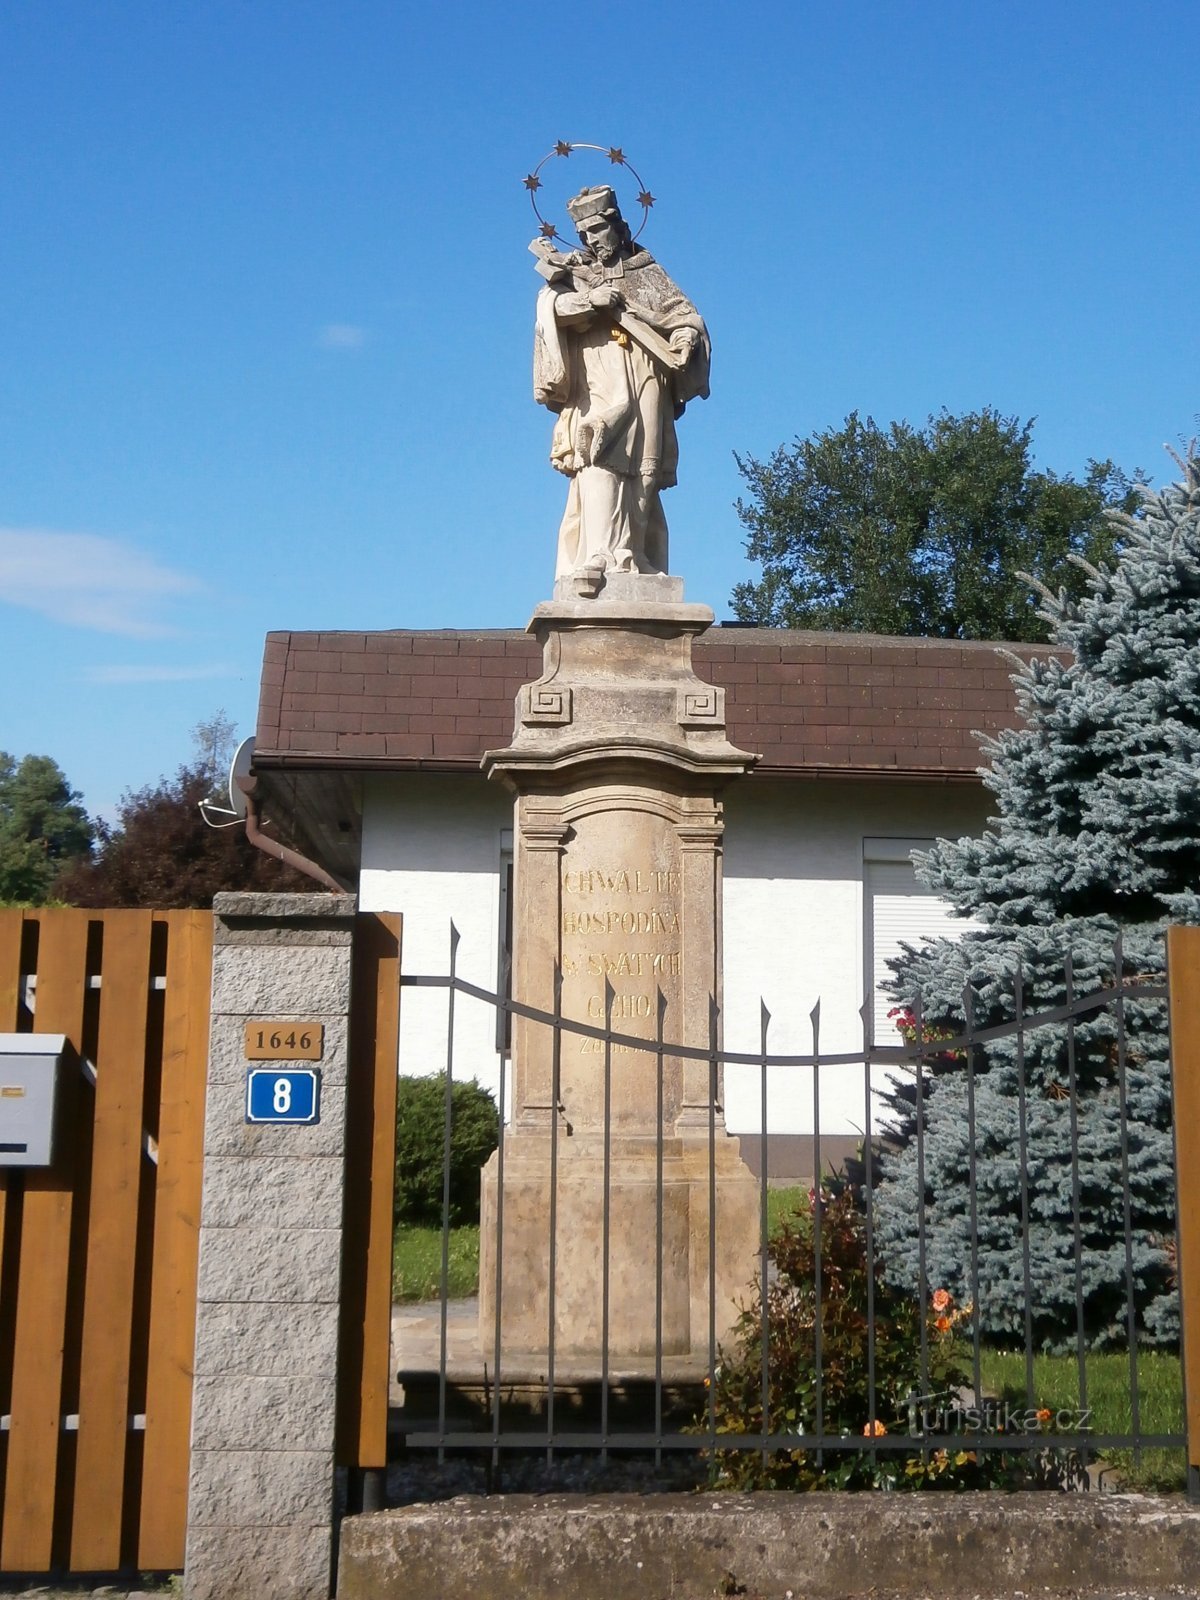 Statue von St. Jan Nepomucký in der Medková-Straße (Hradec Králové, 29.7.2017)